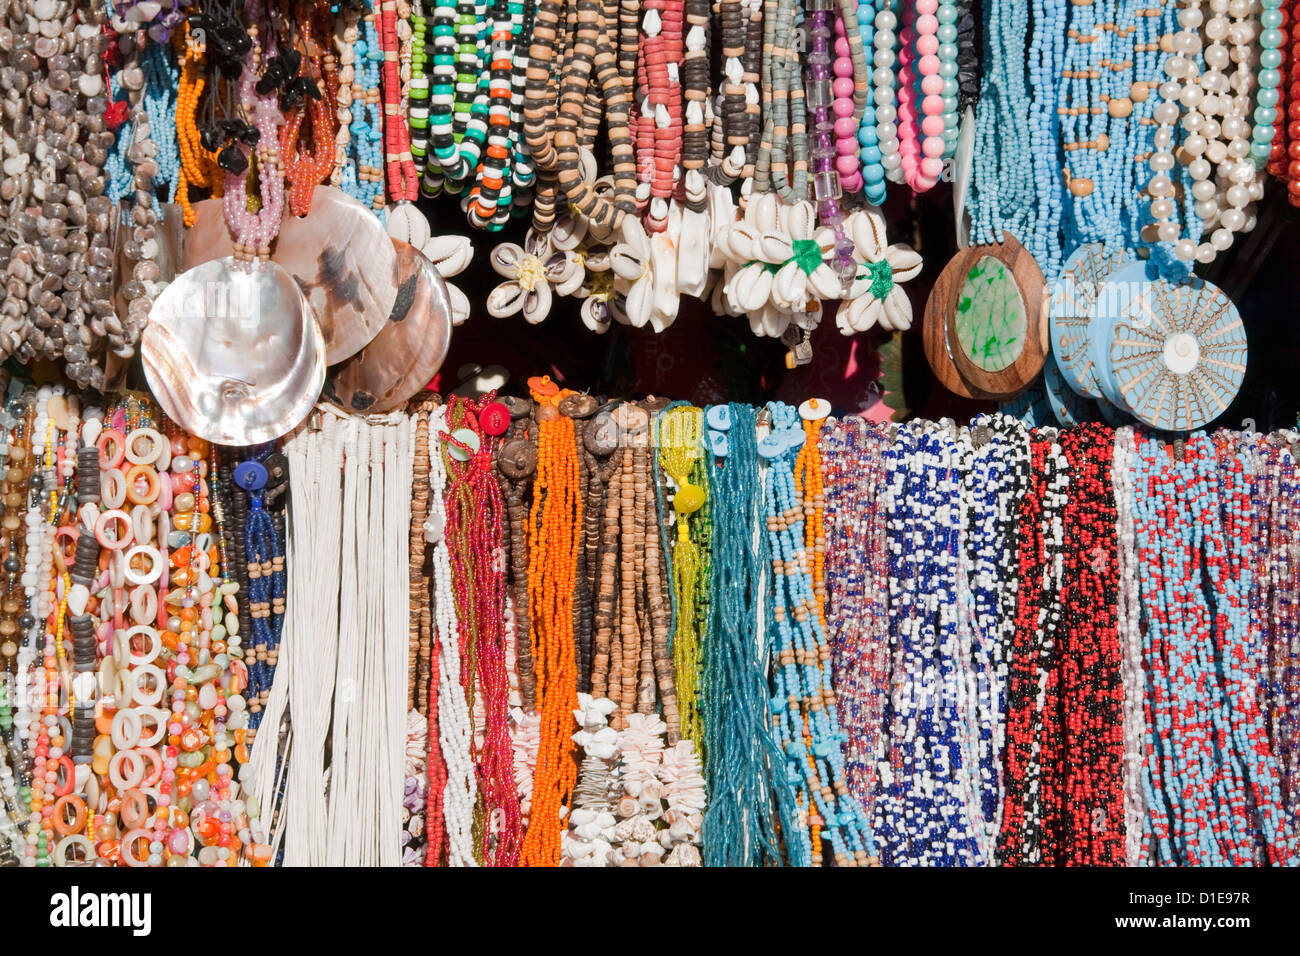 Magasin d'artisanat dans la région de Puerta Maya, l'île de Cozumel, Quintana Roo, Mexique, Amérique du Nord Banque D'Images